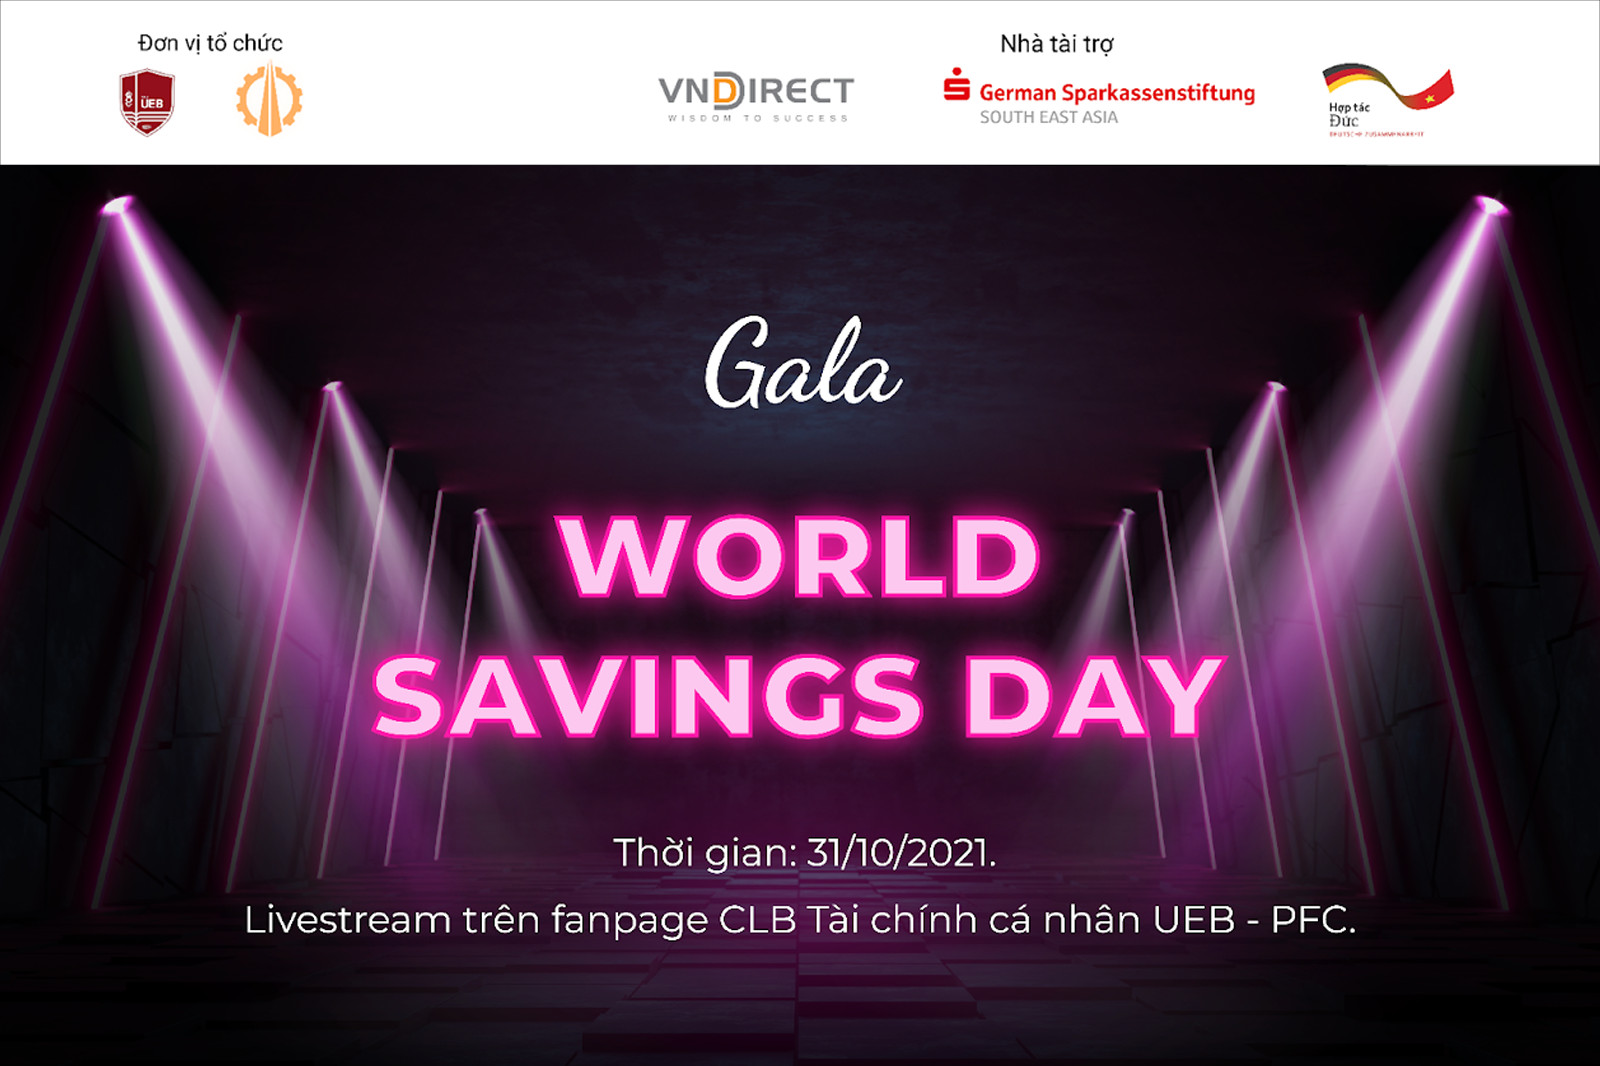   World Savings Day 2021 – UEB hưởng ứng phong trào “Ngày tiết kiệm Thế giới” 